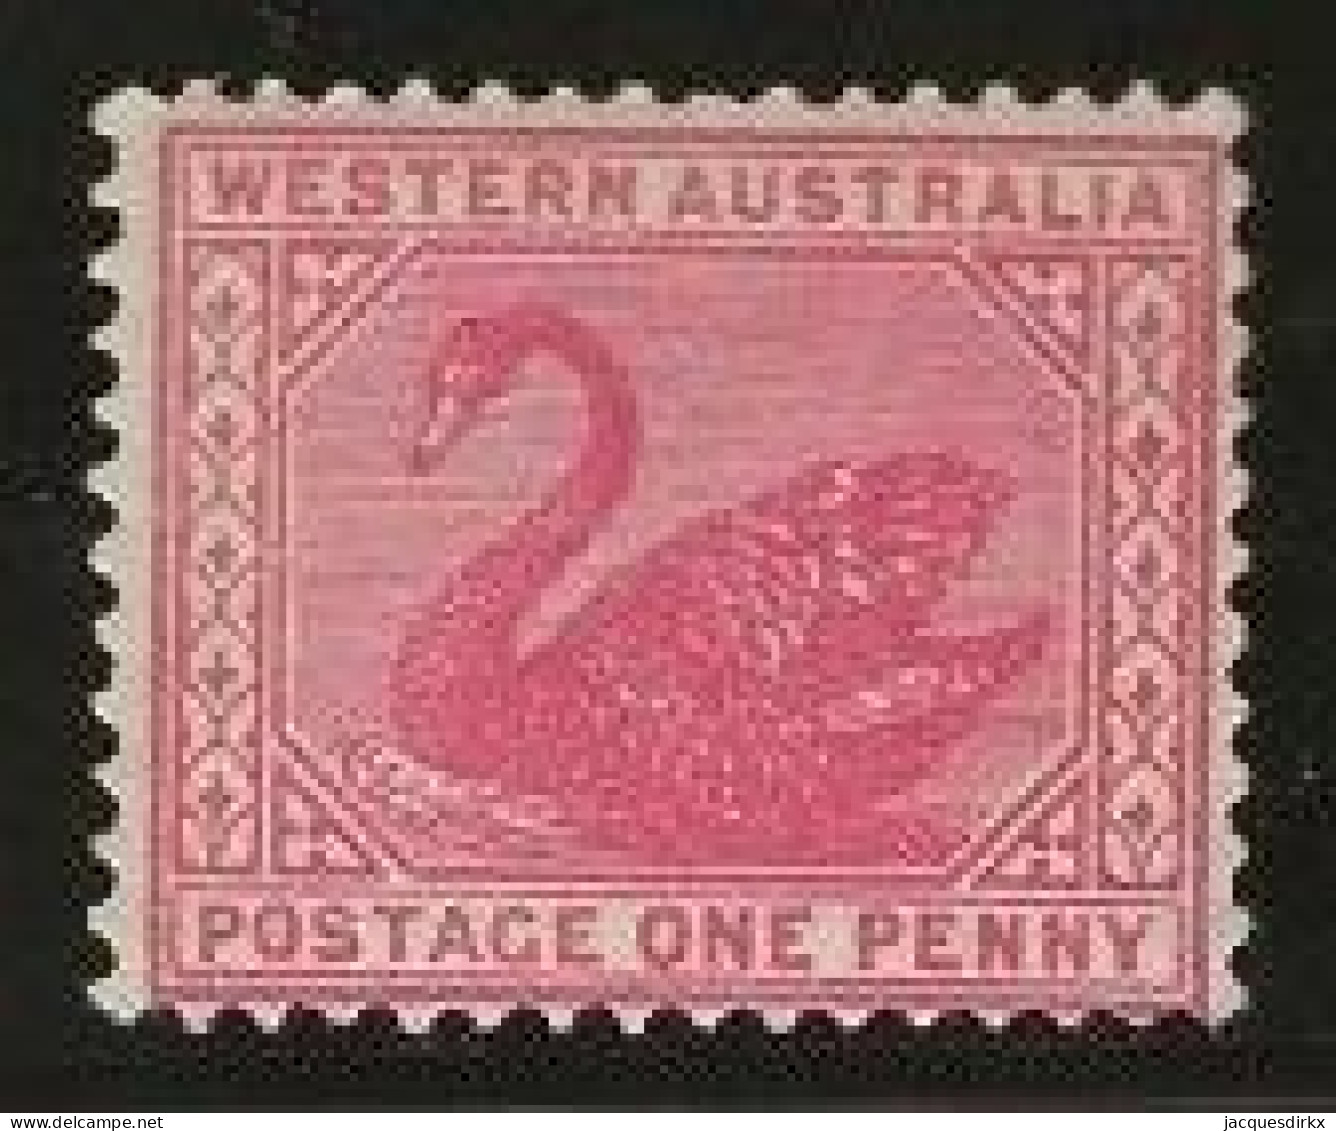 Western Australia     .   SG    .    117         .   *       .     Mint-hinged - Ungebraucht